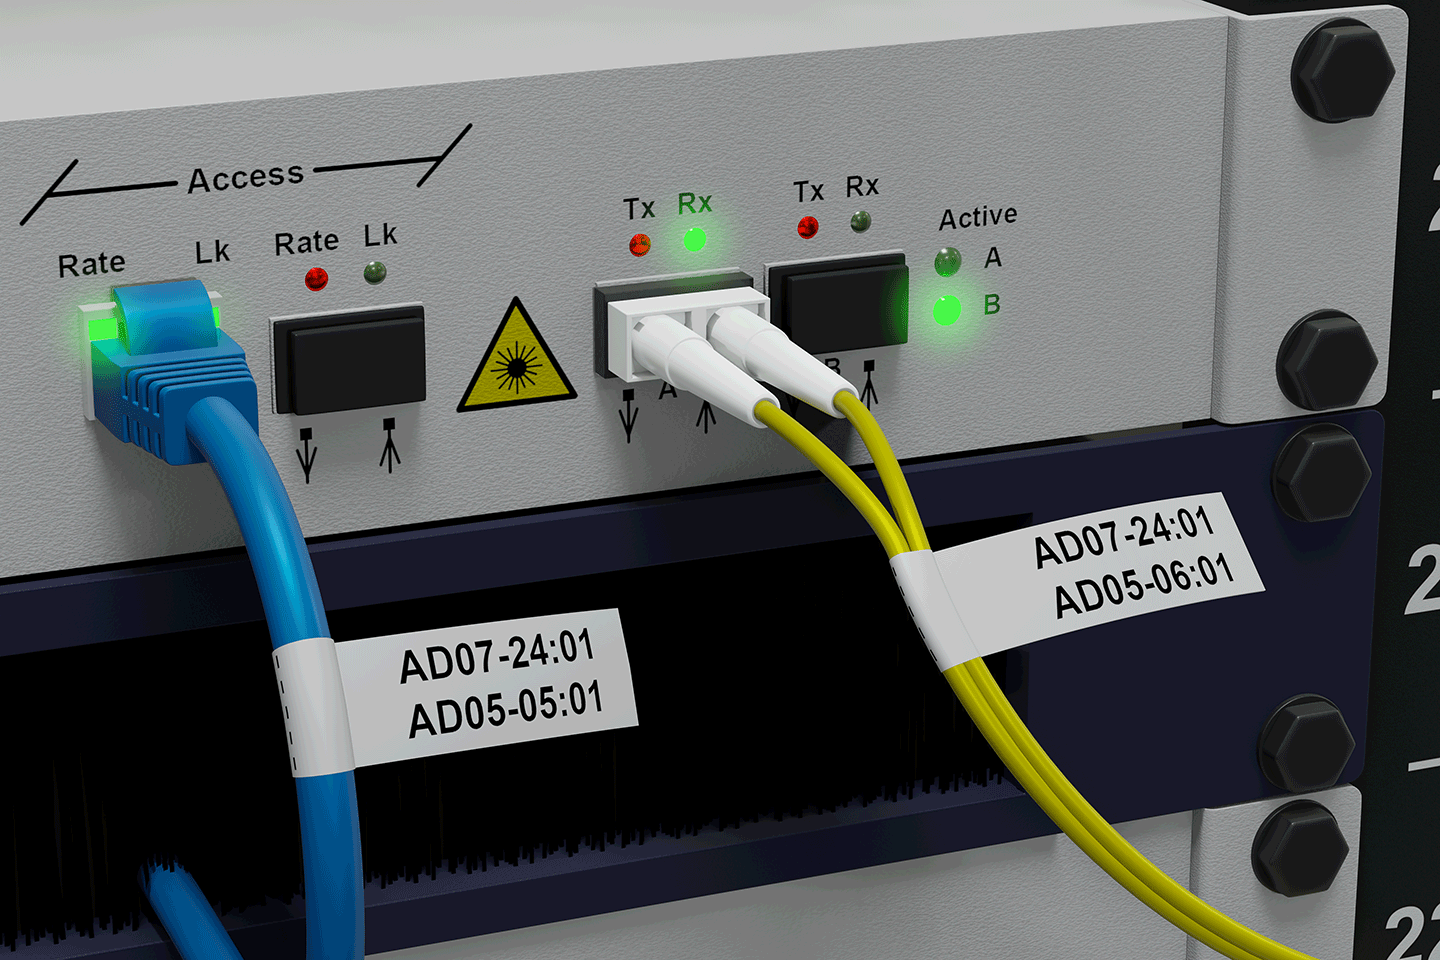 PT-E550WNIVP - network infrastructure label printer kit 7